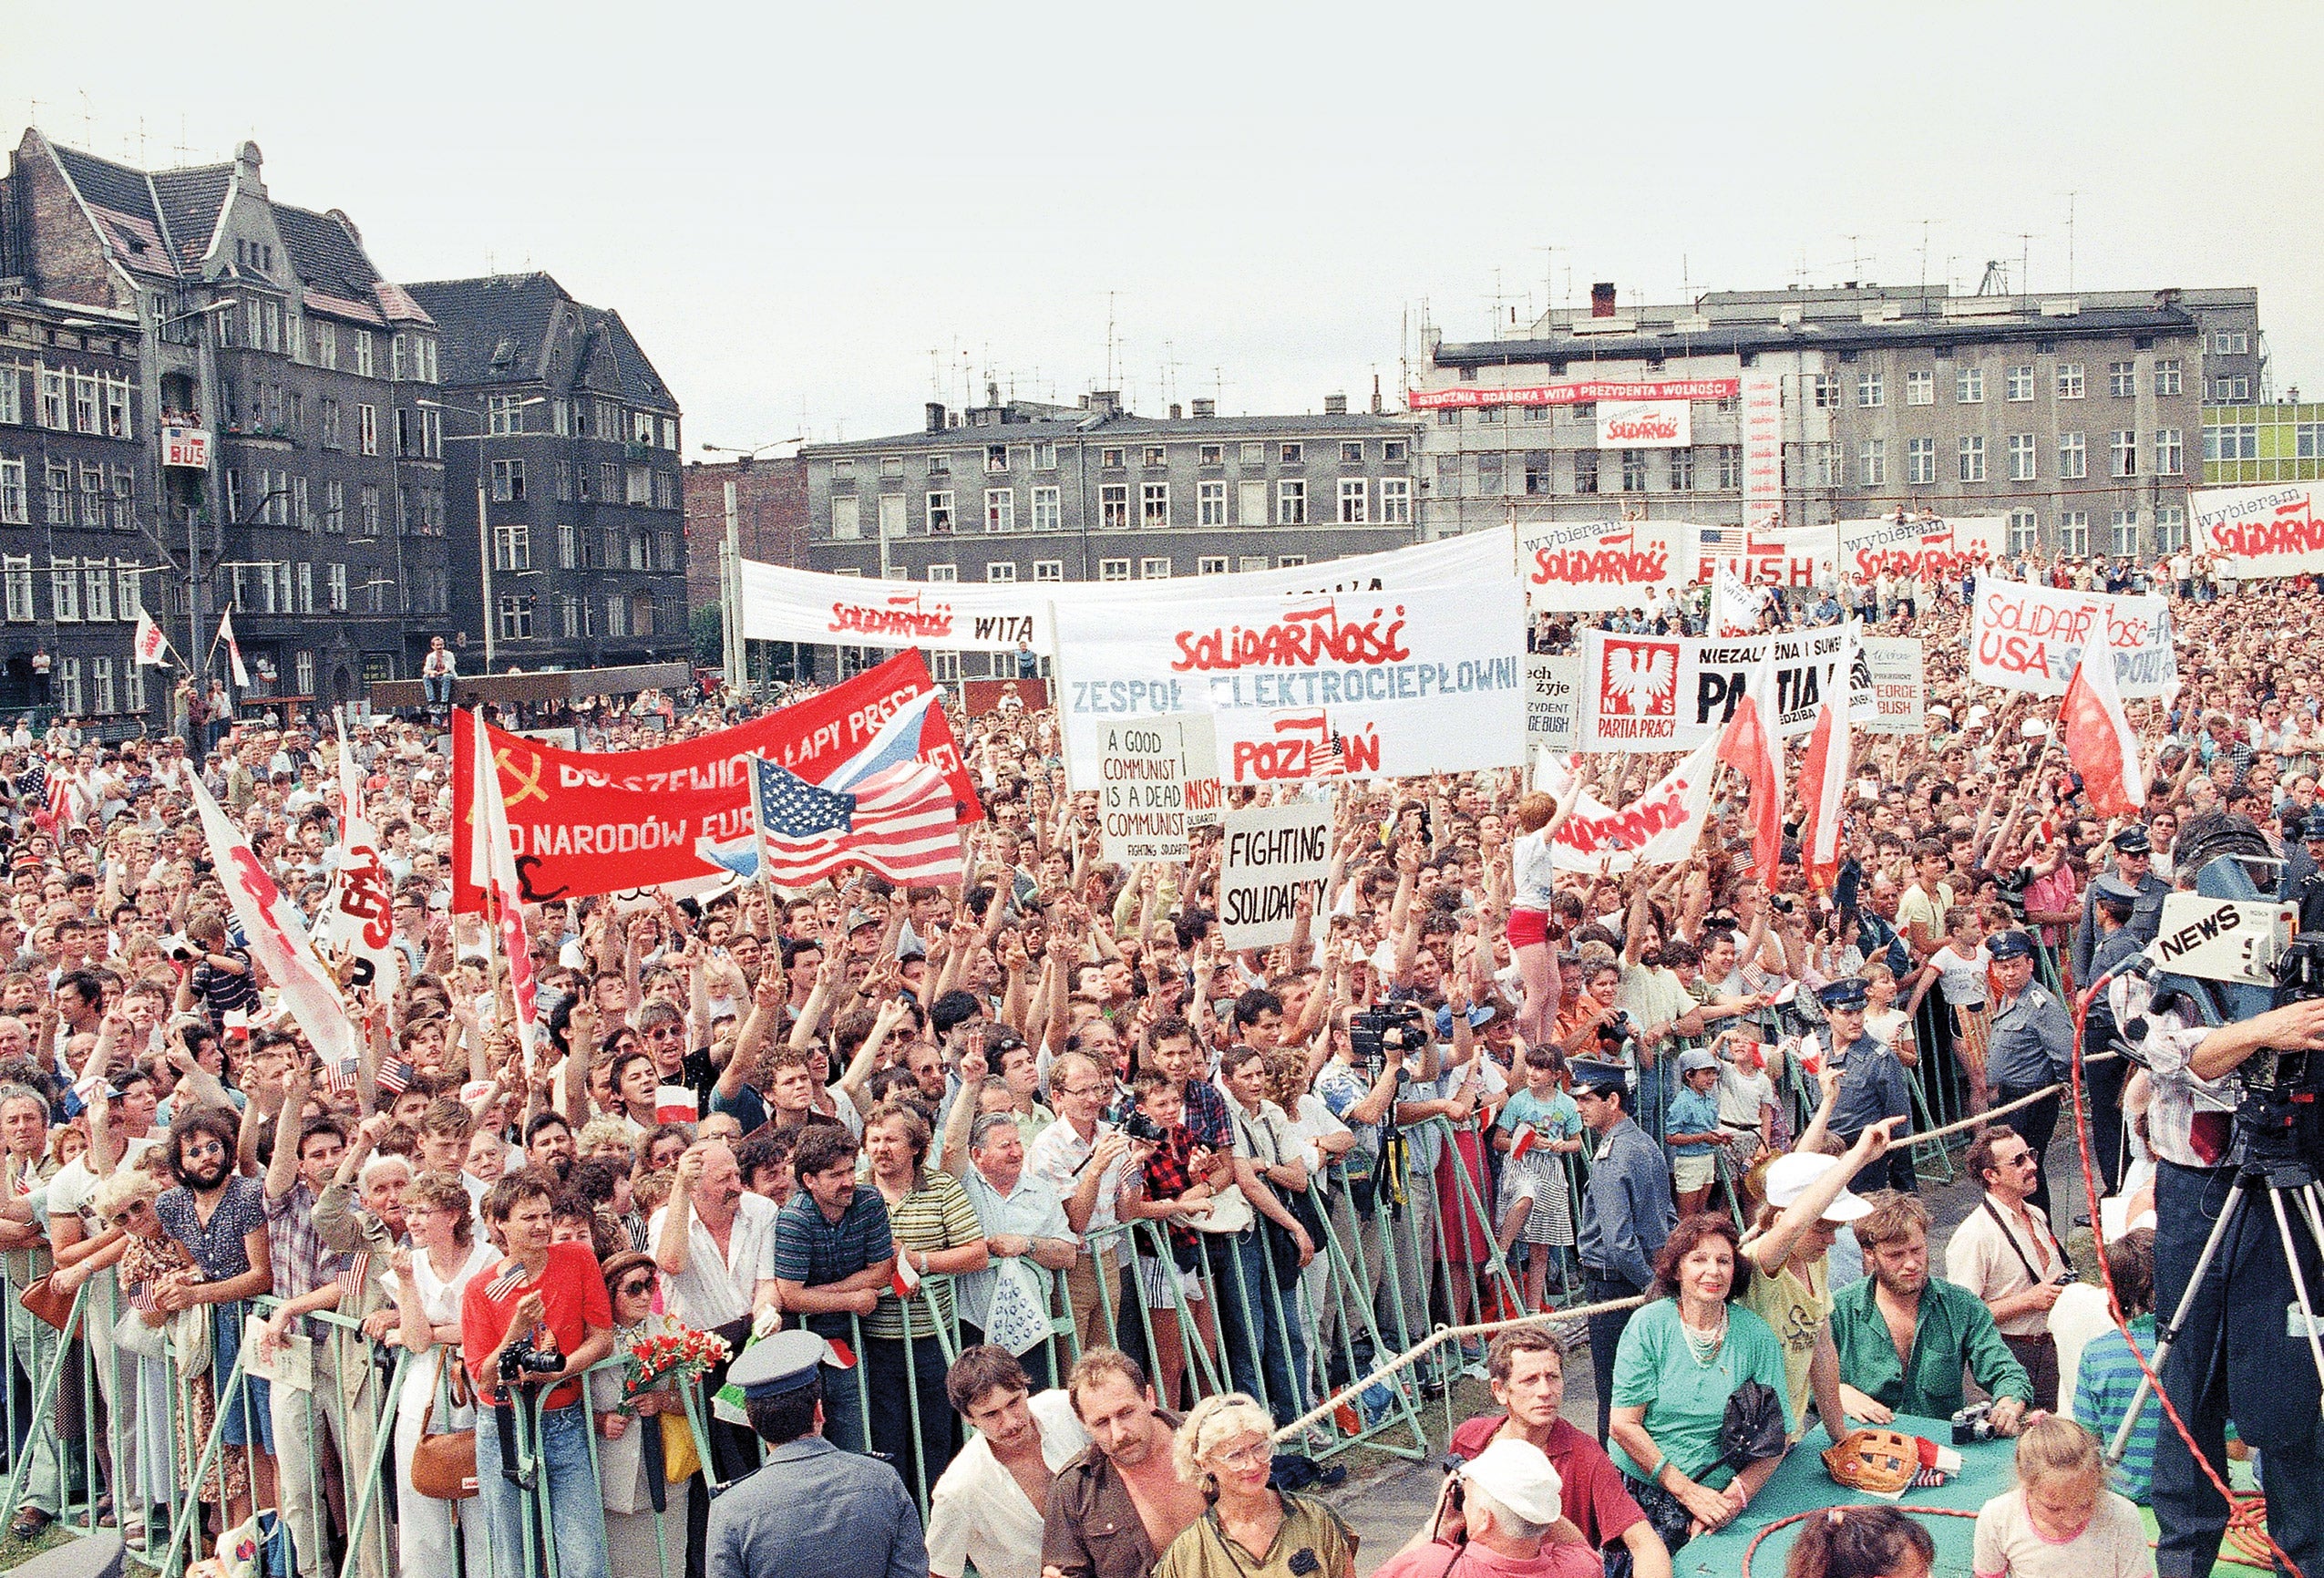 Революции в центральной и восточной европы. Бархатная революция в Польше 1989. Солидарность Польша 1989. Бархатная революция в Чехословакии 1989. В 1989 году в Польше революции..